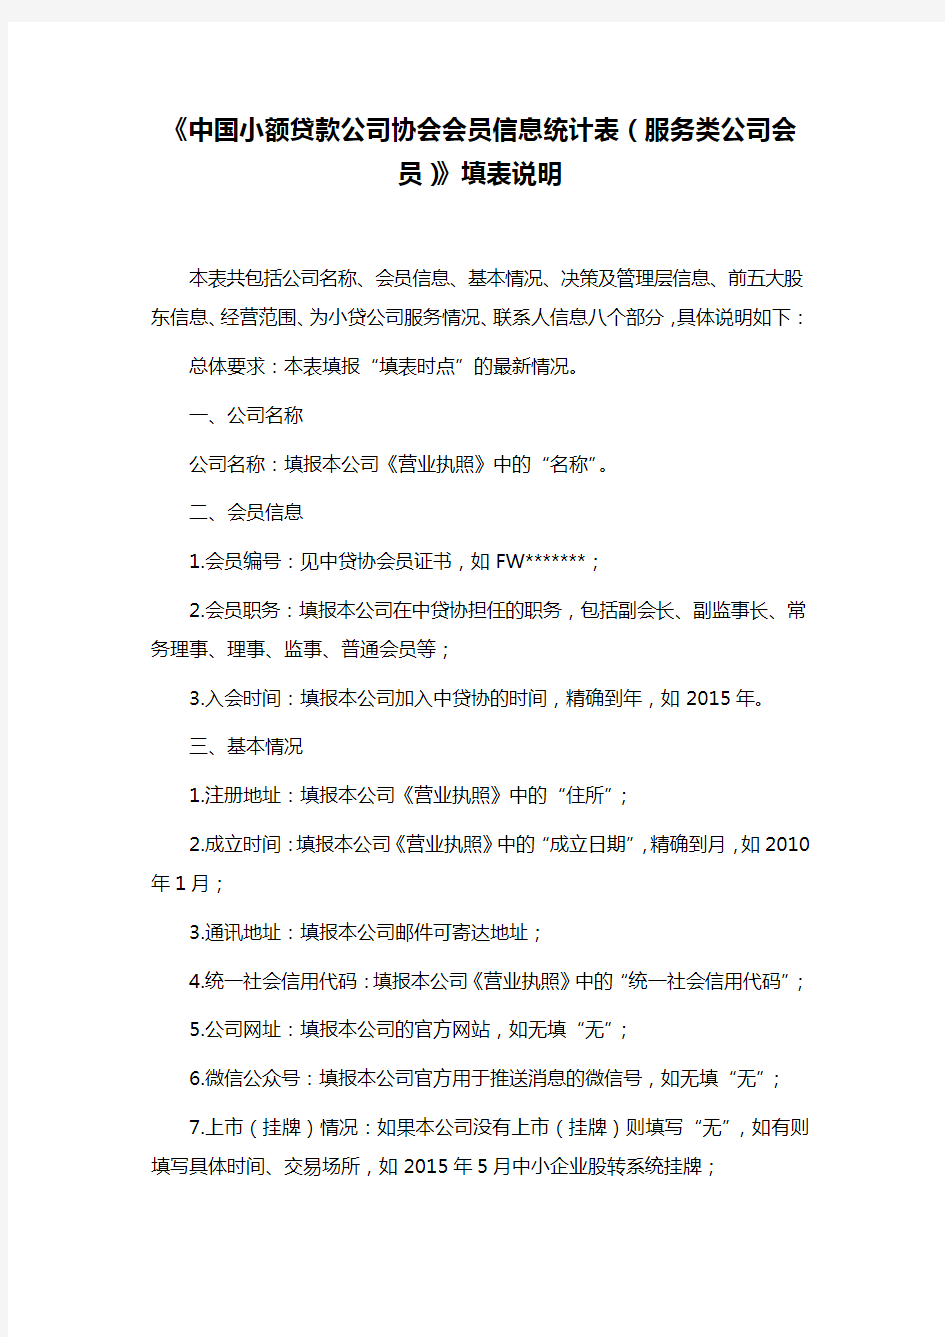 《中国小额贷款公司协会会员信息统计表(服务类公司会员)》填表说明